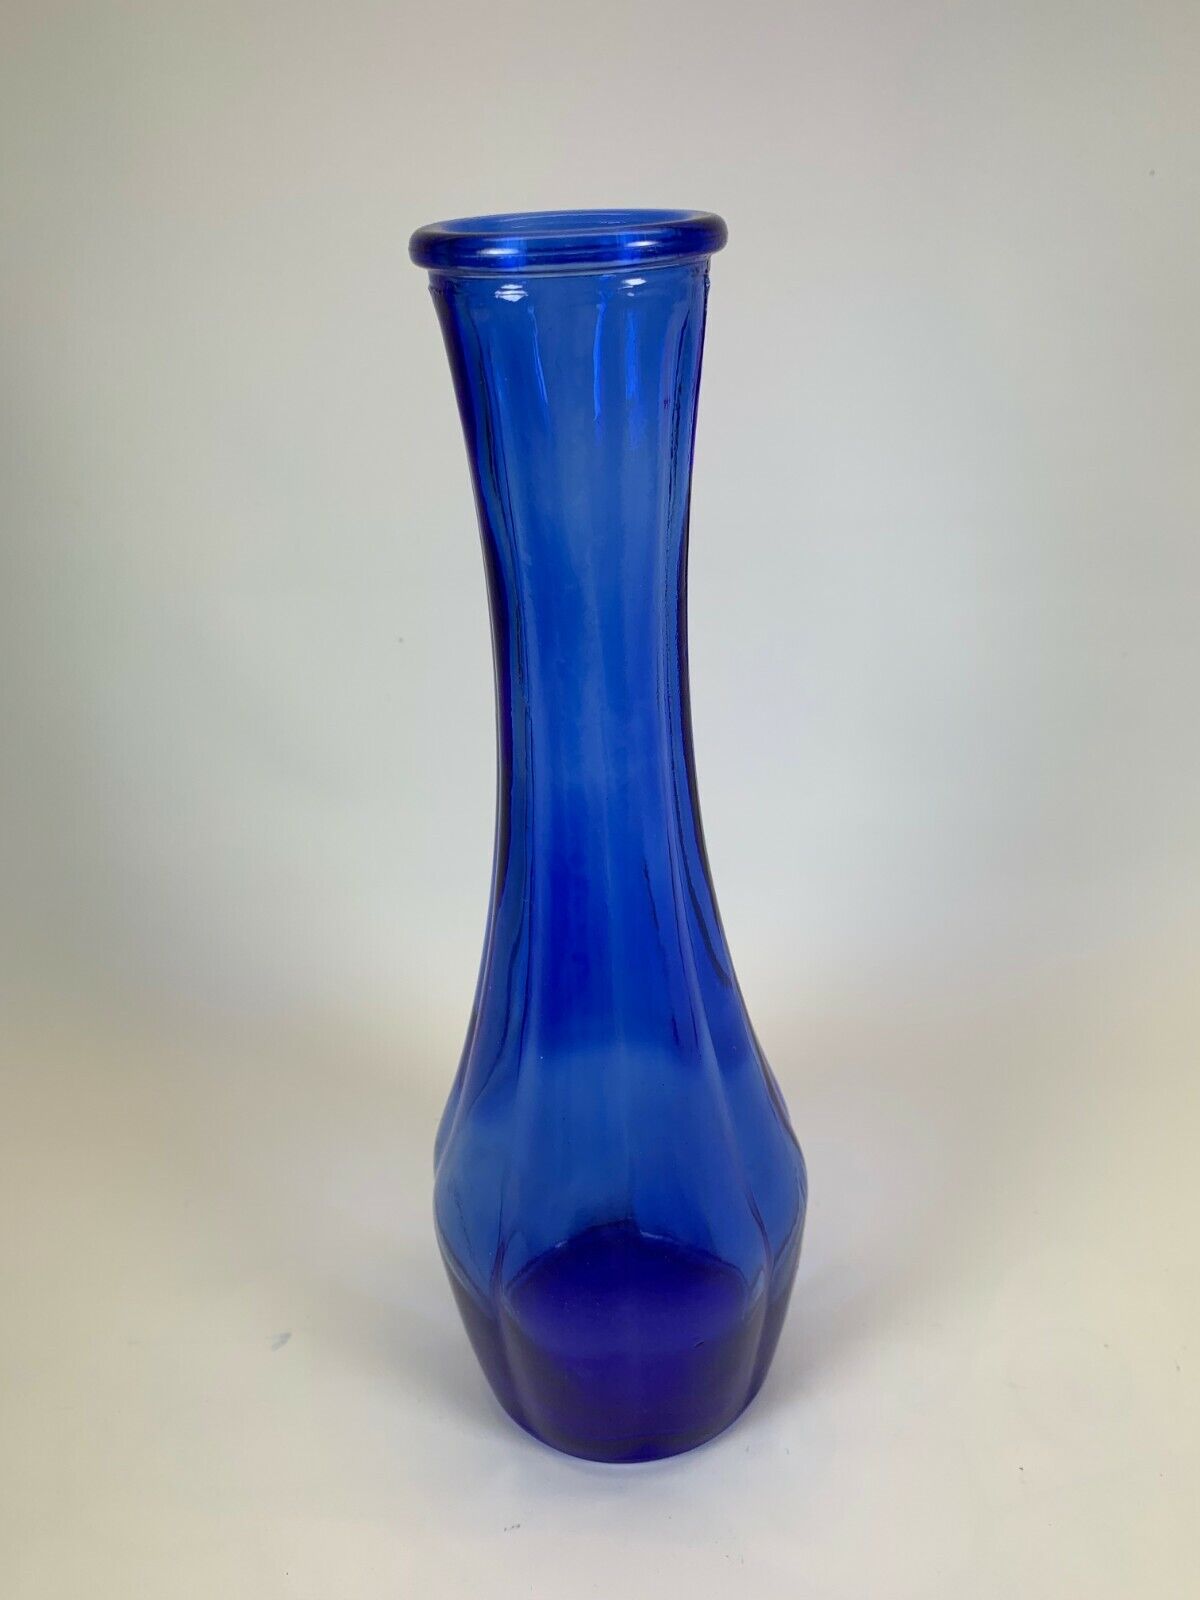  vase vintage cobalt blue ribbed glass 9 inch tall